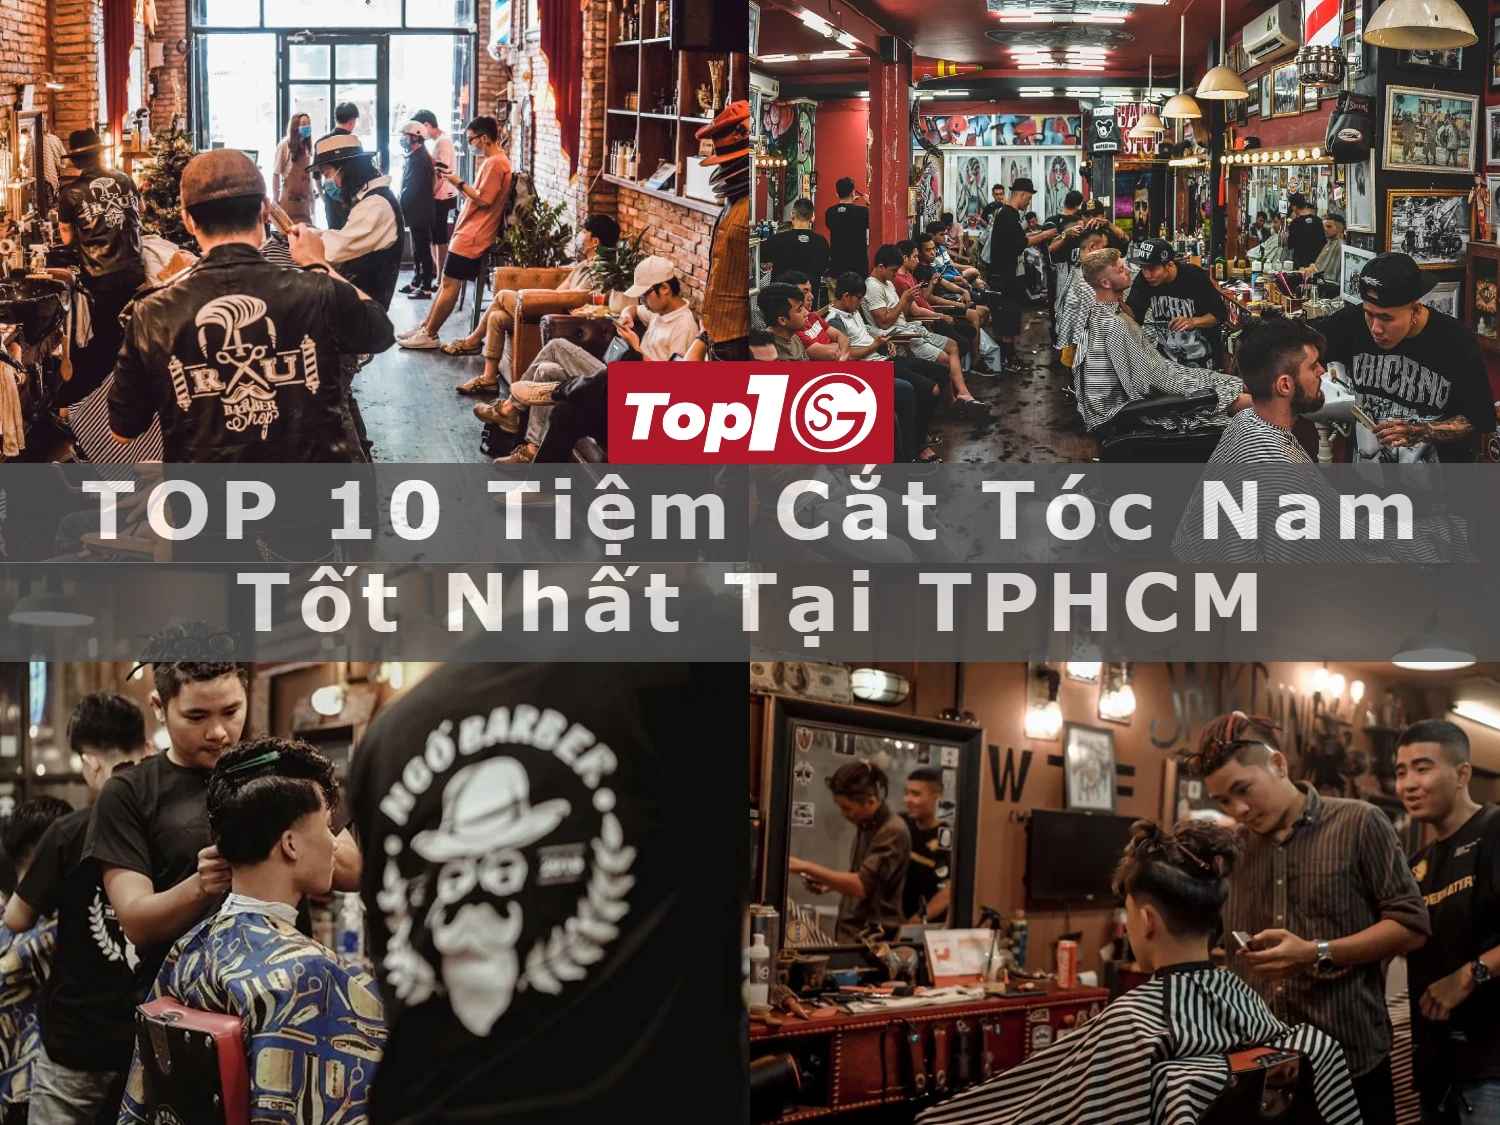 TOP 10 tiệm cắt tóc gần đây dành cho nam tốt nhất TPHCM